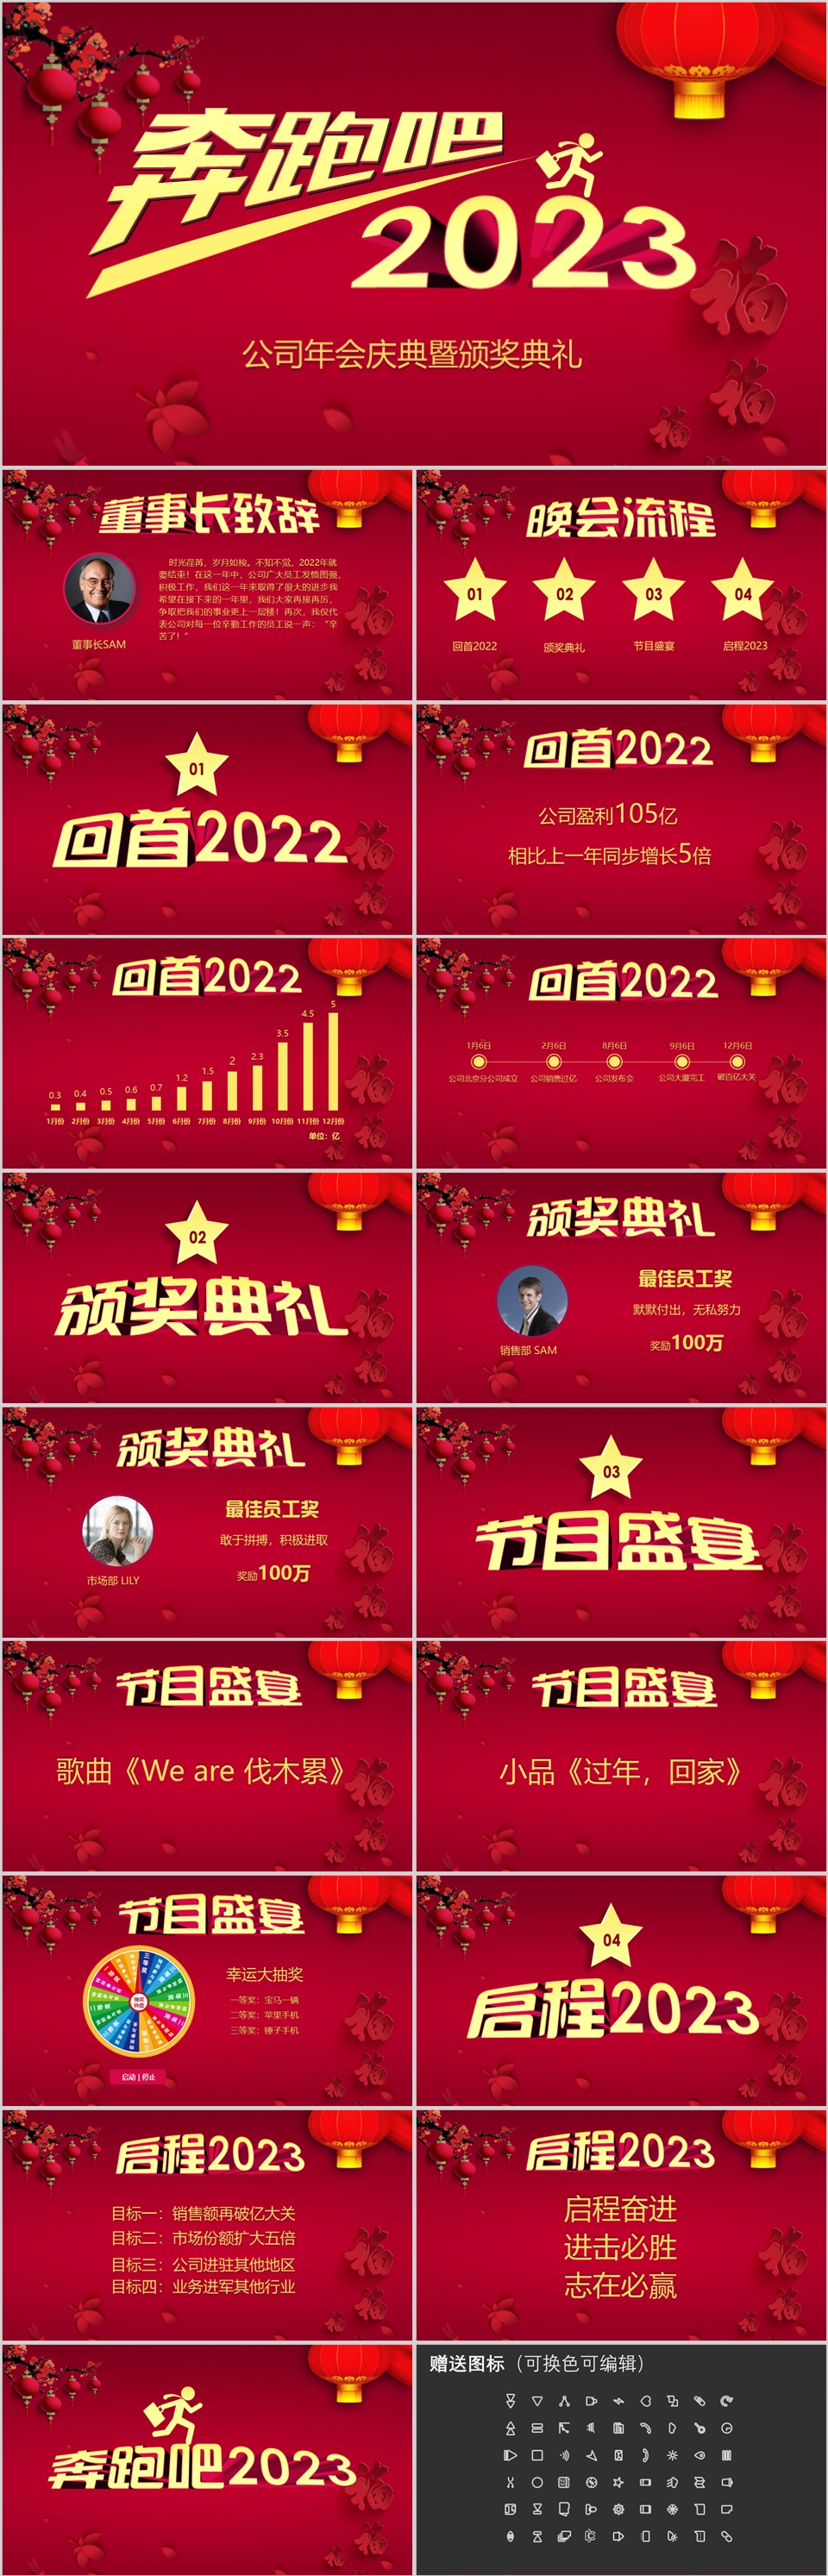 2023红色大气公司年会庆典颁奖典礼PPT模板